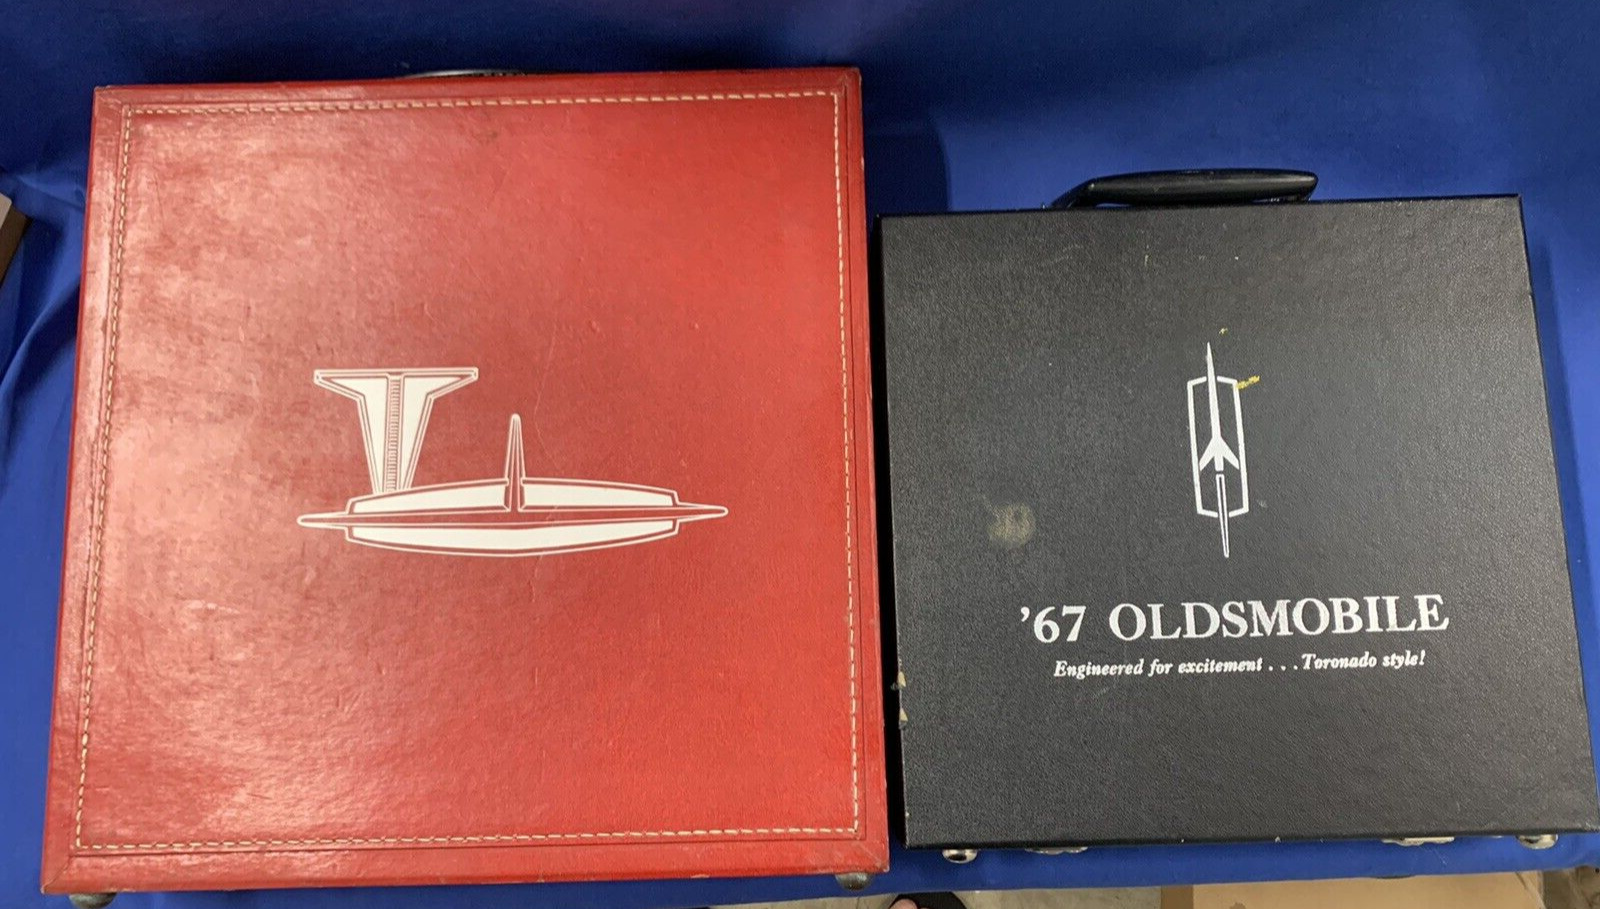 Vintage 1963 & 1967 Oldsmobile Dealership Salesman Training Marketing Briefcase